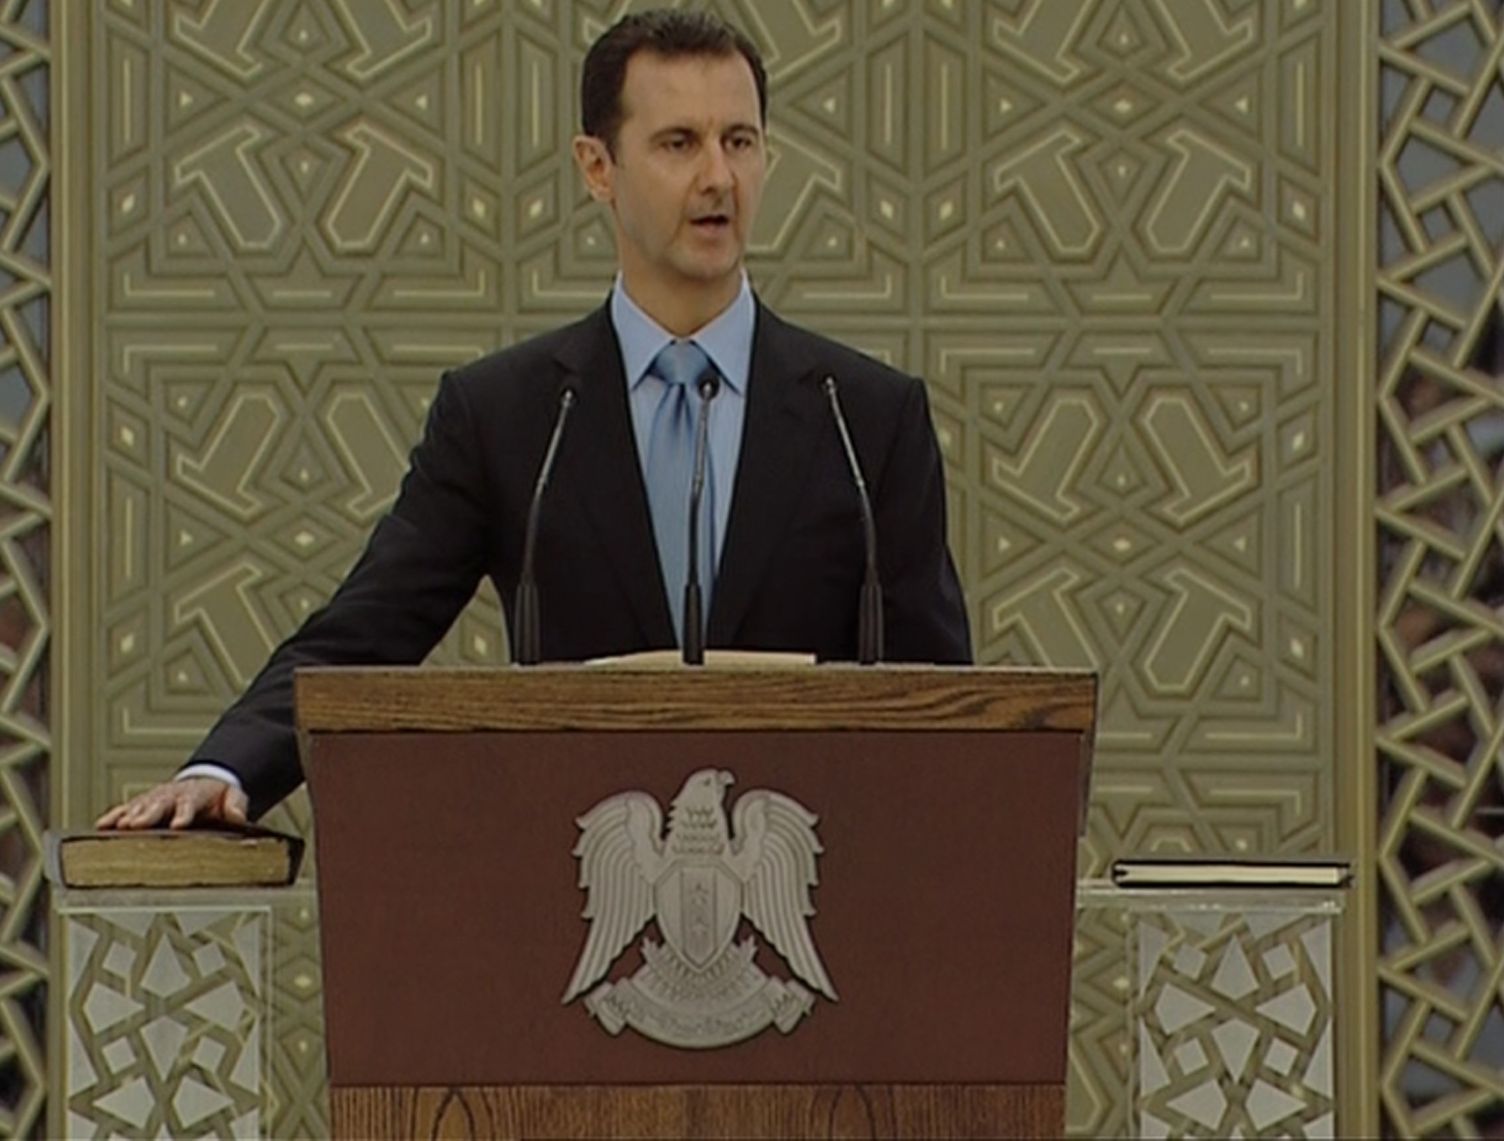 Асад се закле върху Корана, че ще управлява Сирия още 7 години